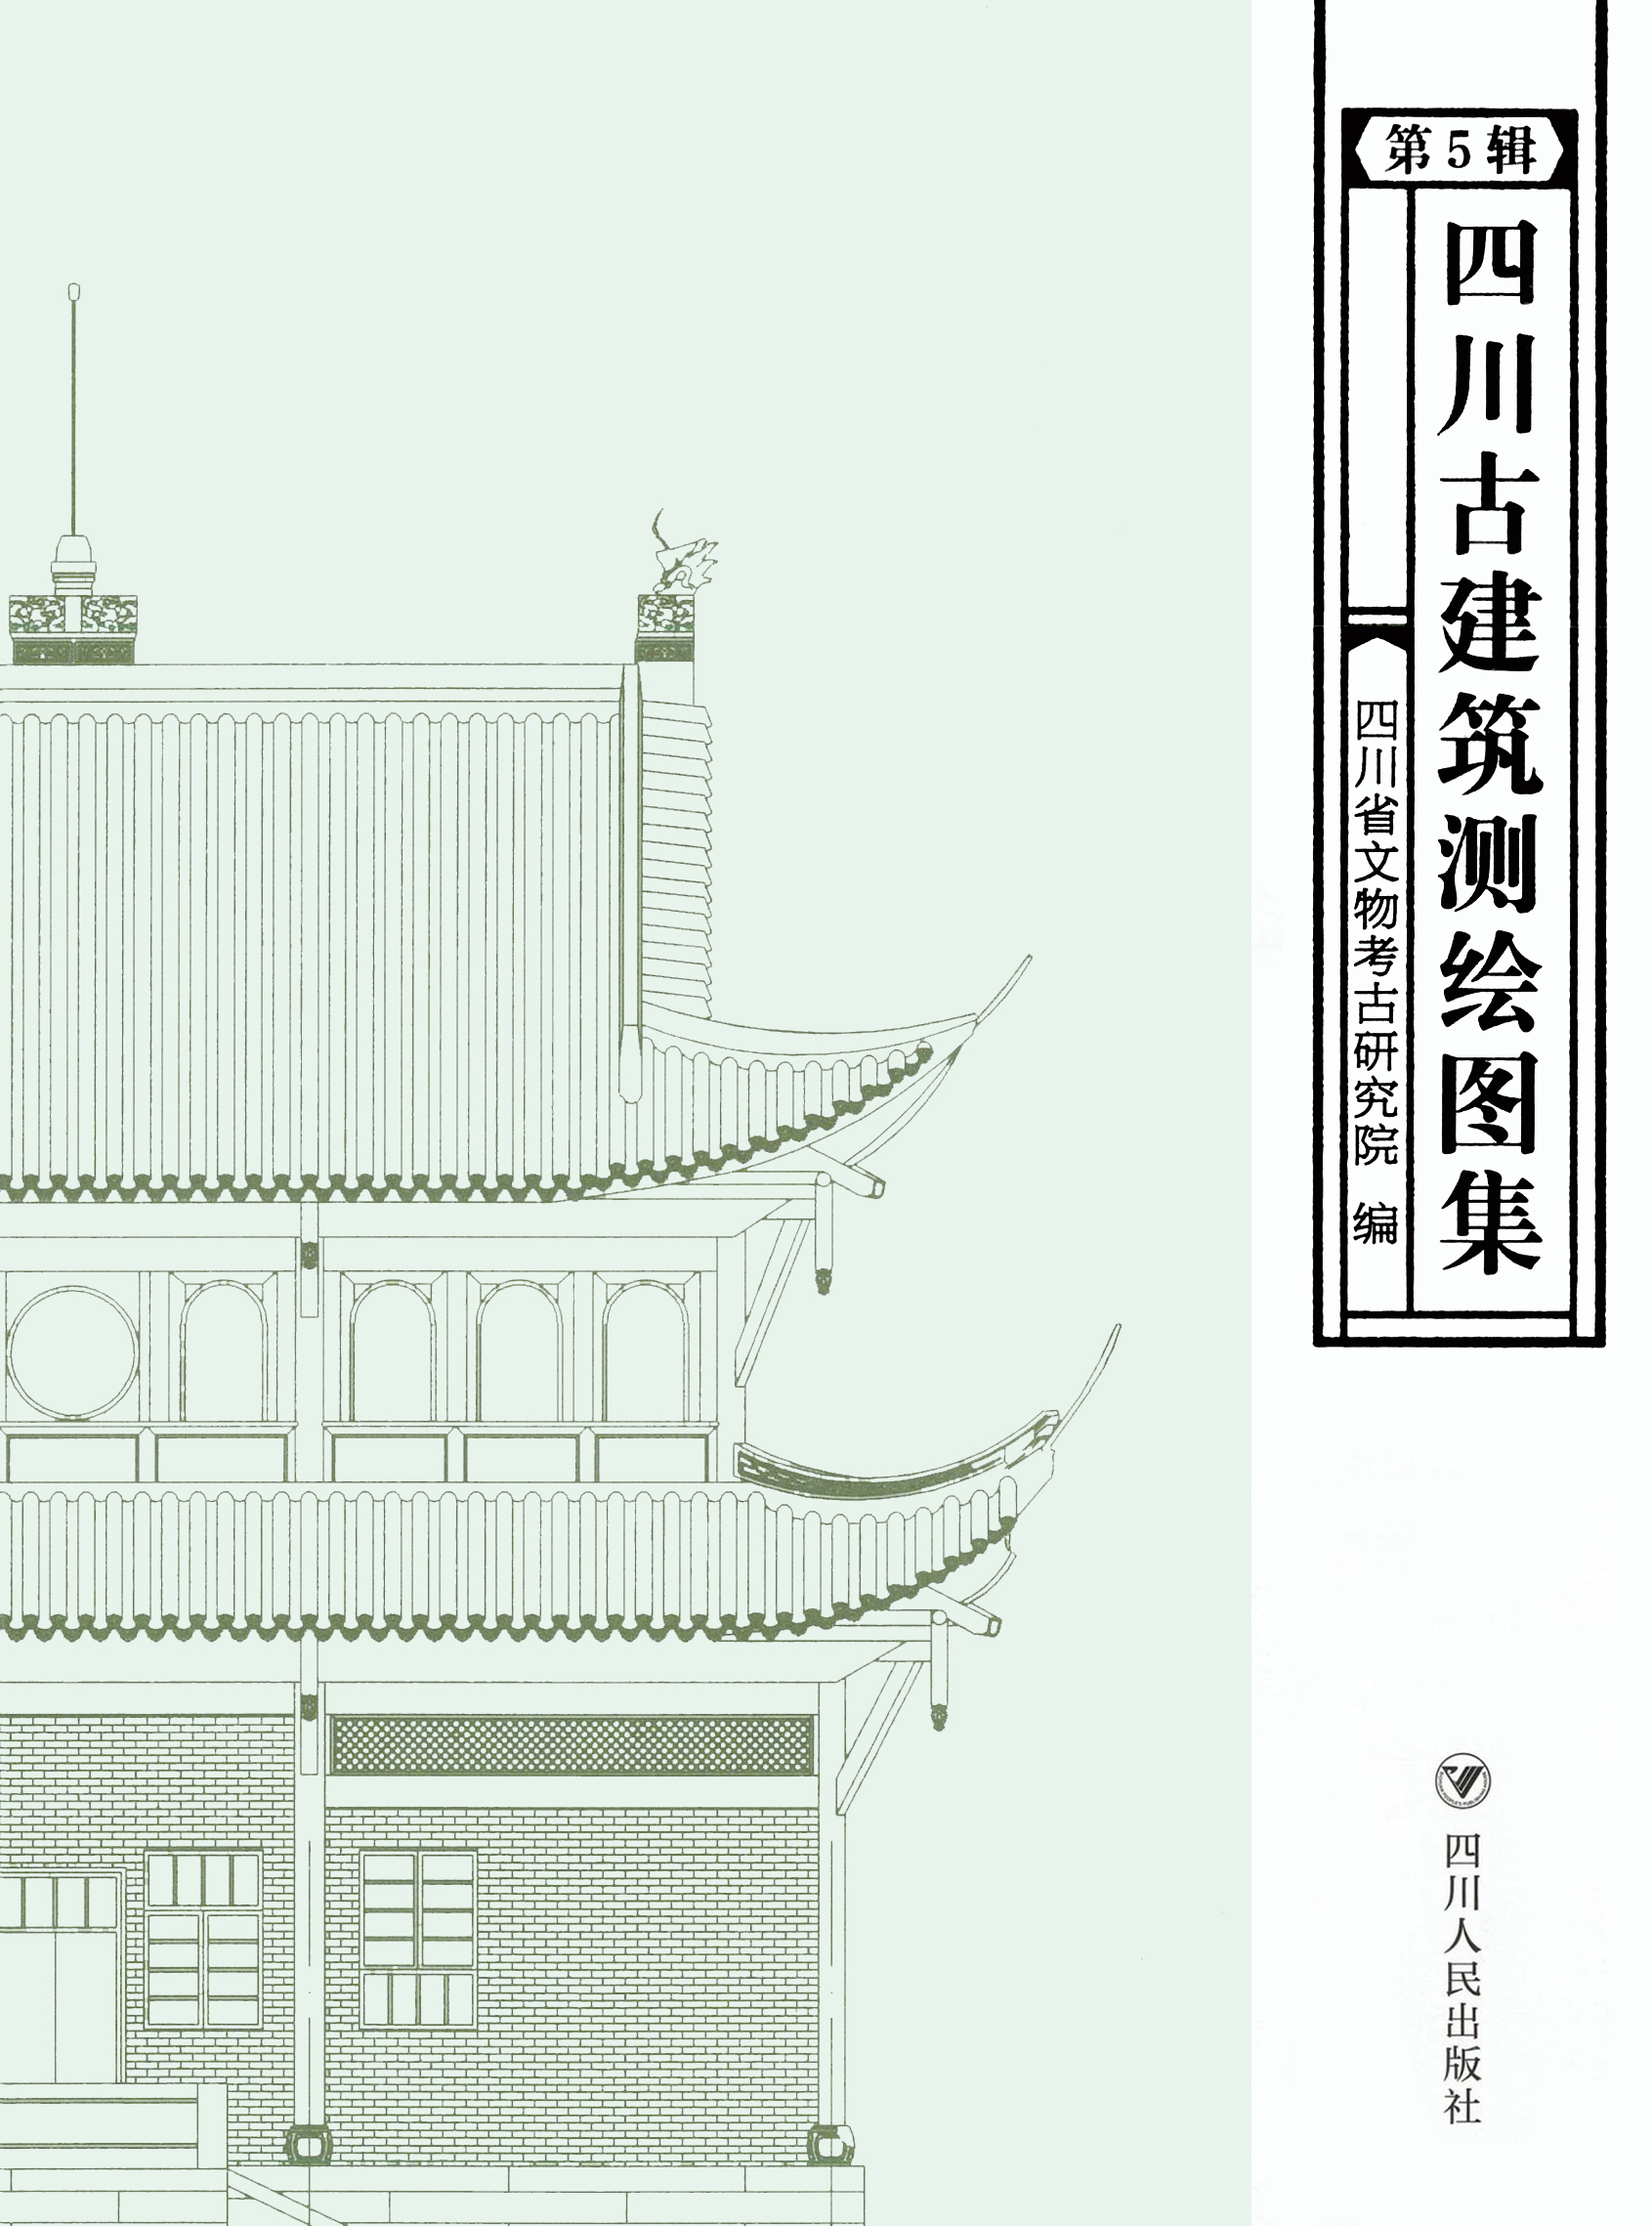 四川古建筑测绘图集 第五辑